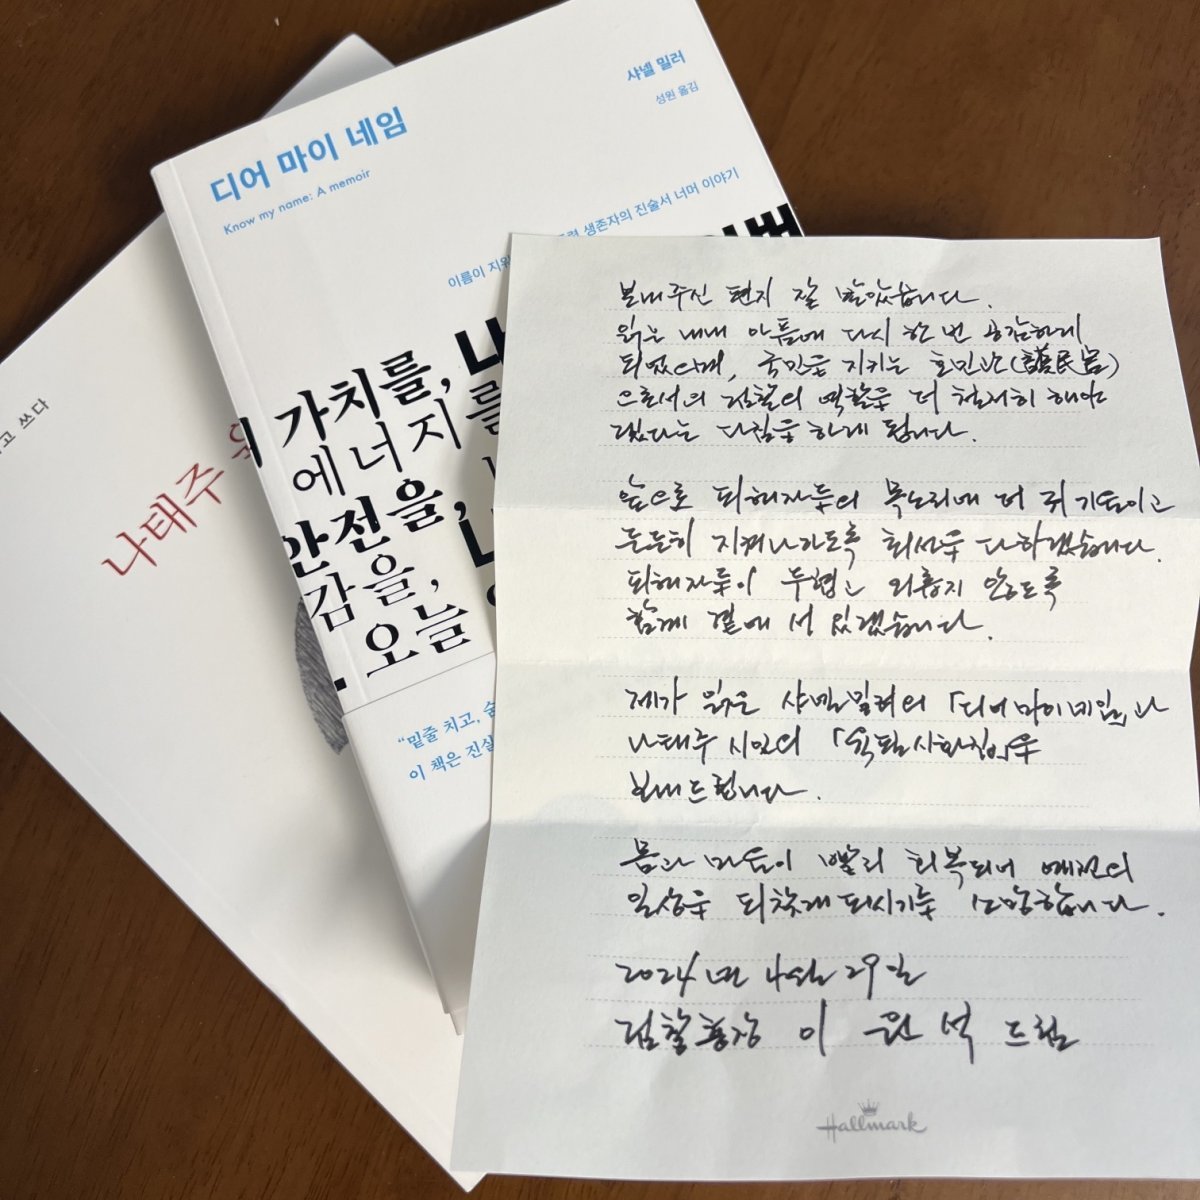 이원석 검찰총장이 김진주 씨(가명)에게 보낸 자필편지와 2권의 책.(김진주 씨 제공)